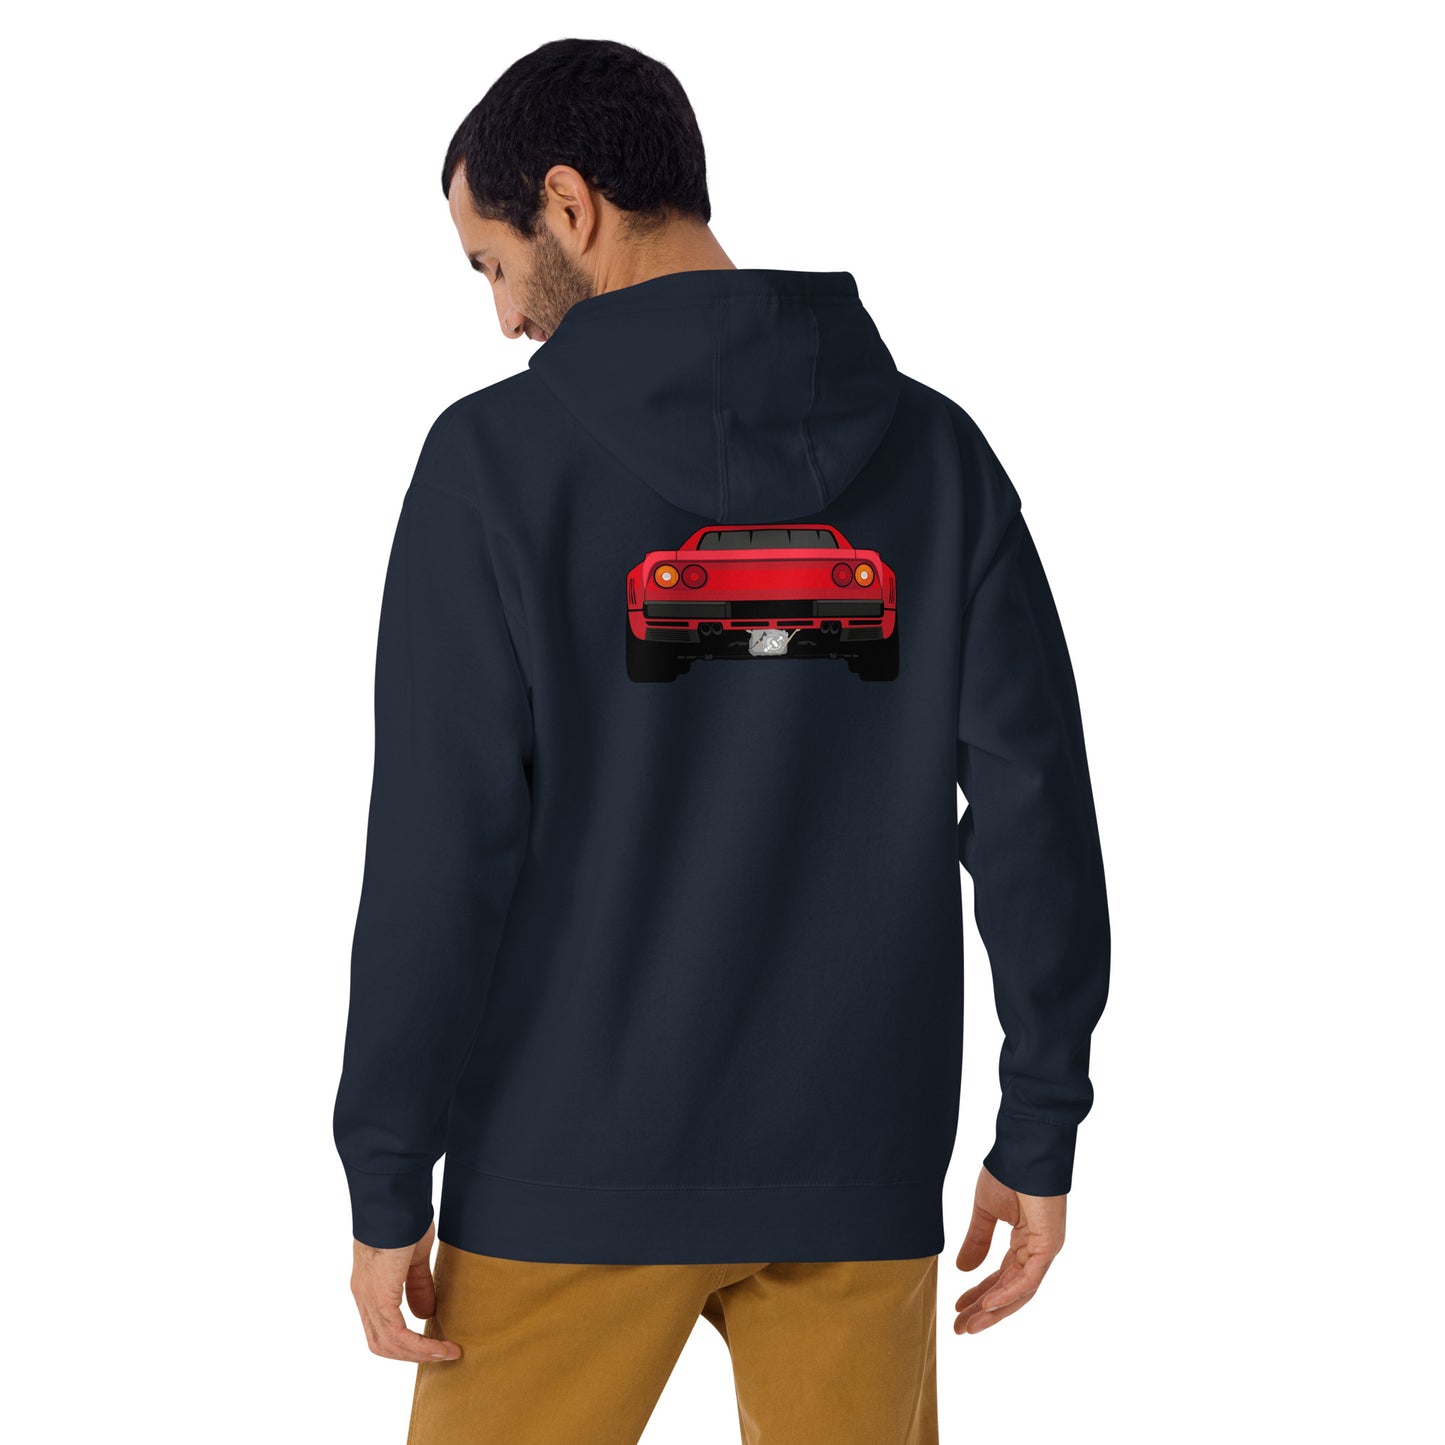 Ferarri 250 GTO "Garage Days" 1 of 100 Unisex Hoodie